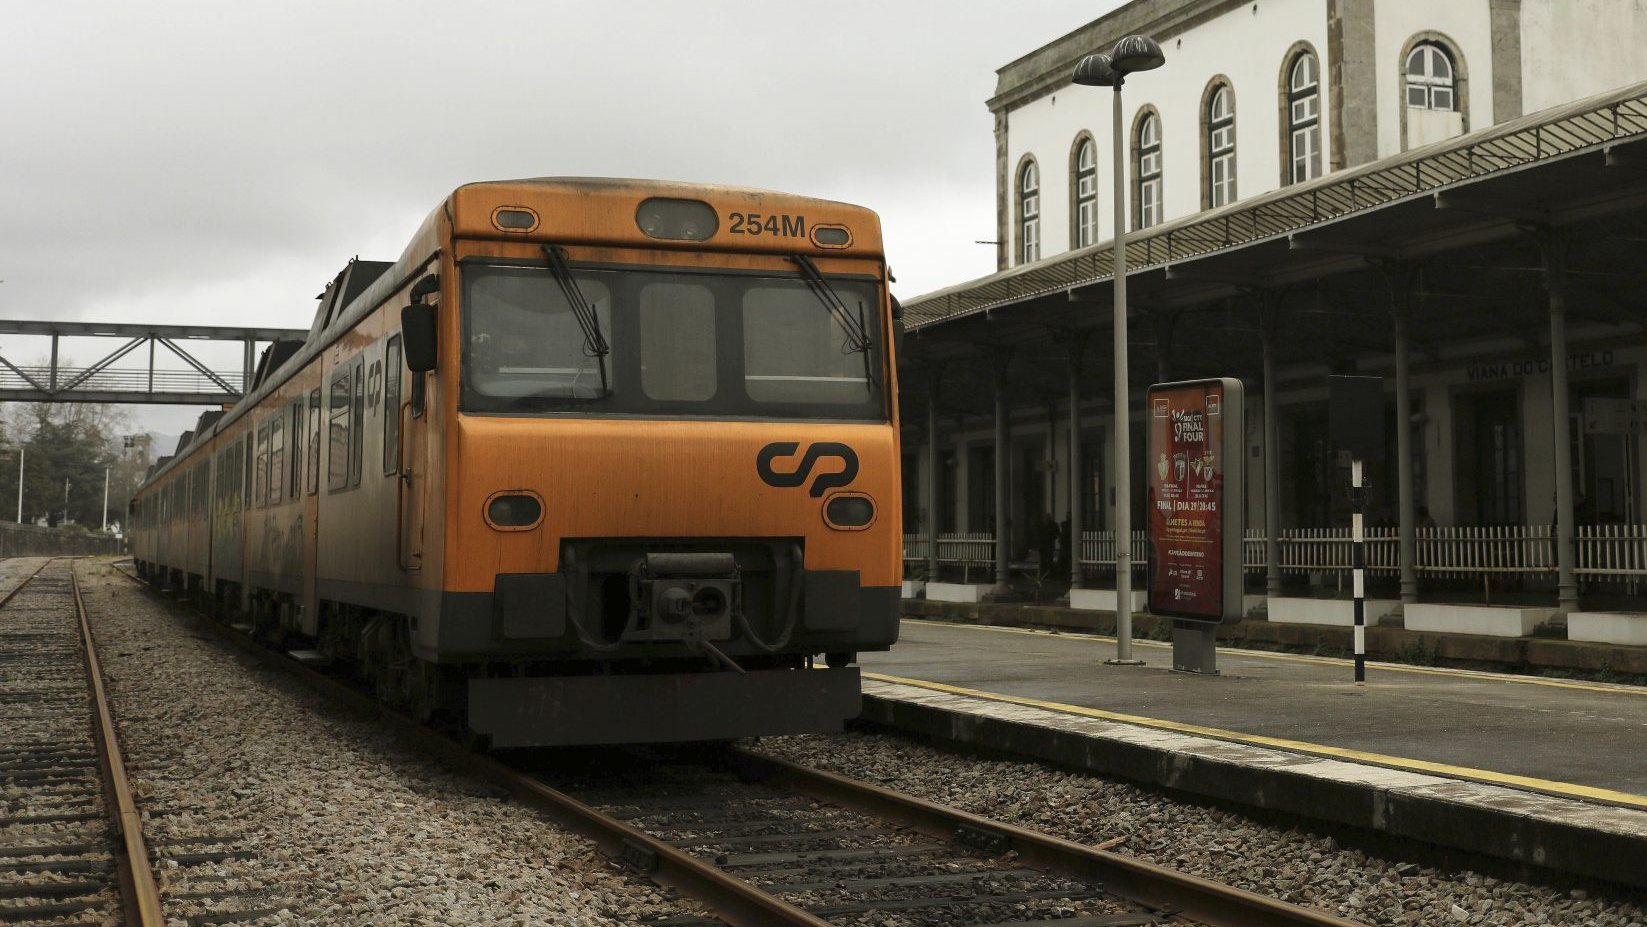 Em 25 de abril, a Infraestruturas de Portugal (IP) iniciou o serviço ferroviário de transporte de passageiros com comboios de tração elétrica no troço da Linha do Minho